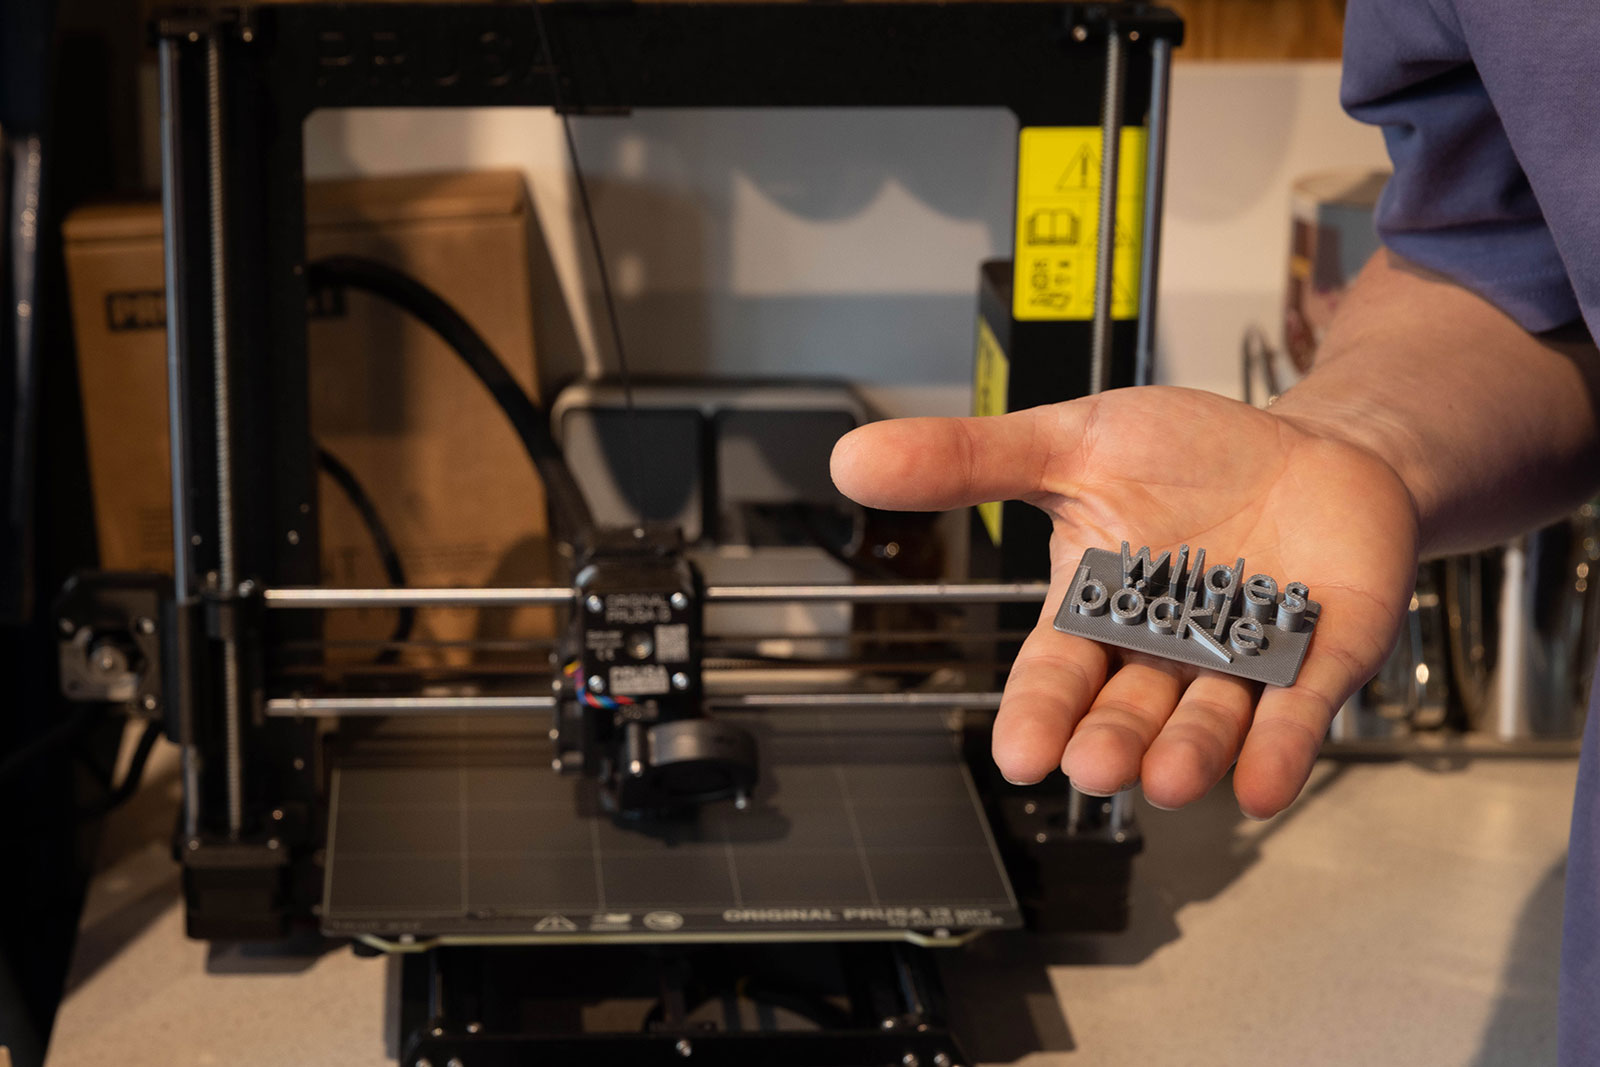 Frank Schwenk zeigt das im 3D-Druck gedruckte wilde böckle-Logo. Im Hintergrund ist der 3D-Drucker zu sehen.